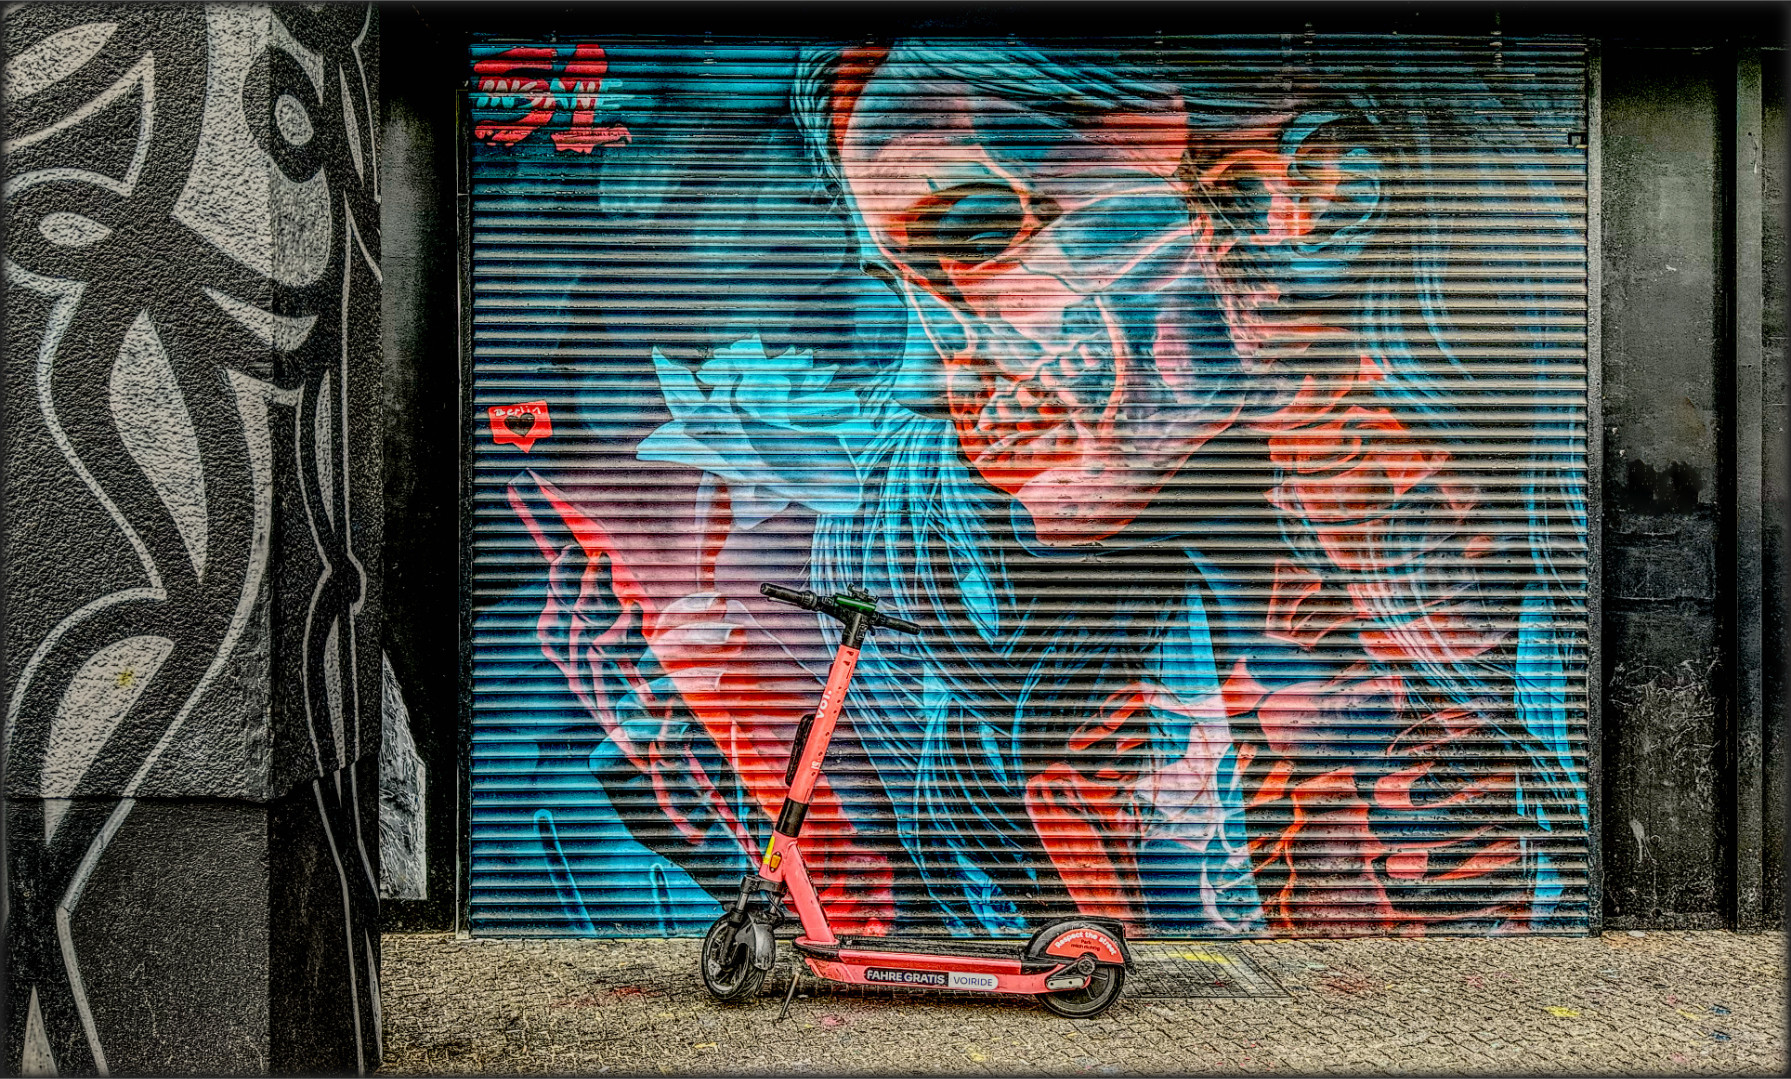 Street-Art-Doppelbild 